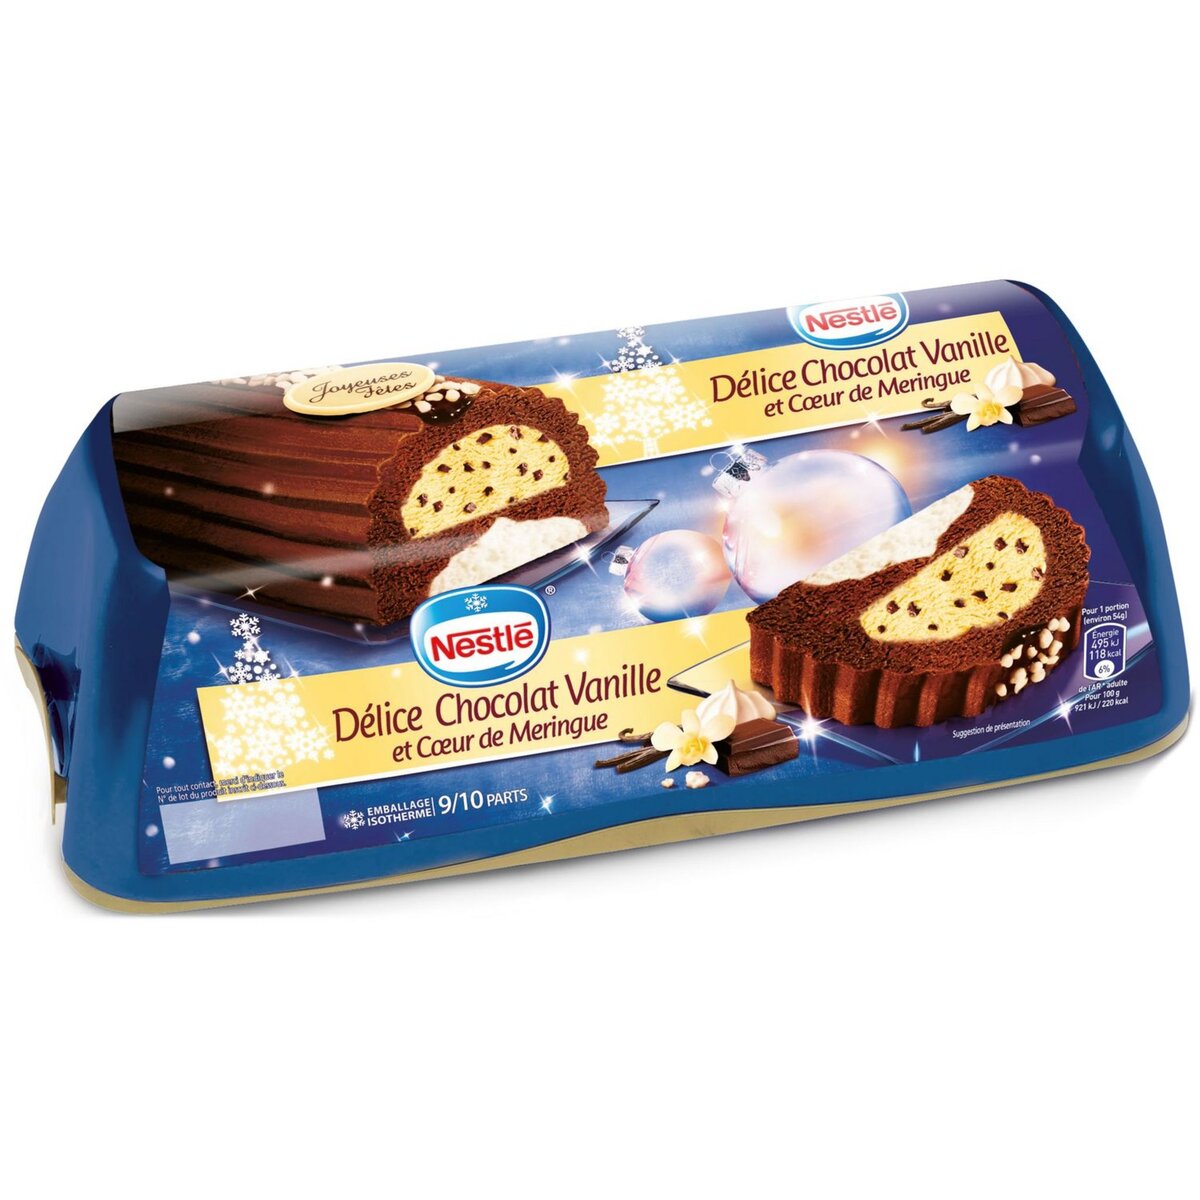 NESTLE Nestlé Bûche glacée chocolat vanille coeur de meringue 540g 9-10 parts 540g